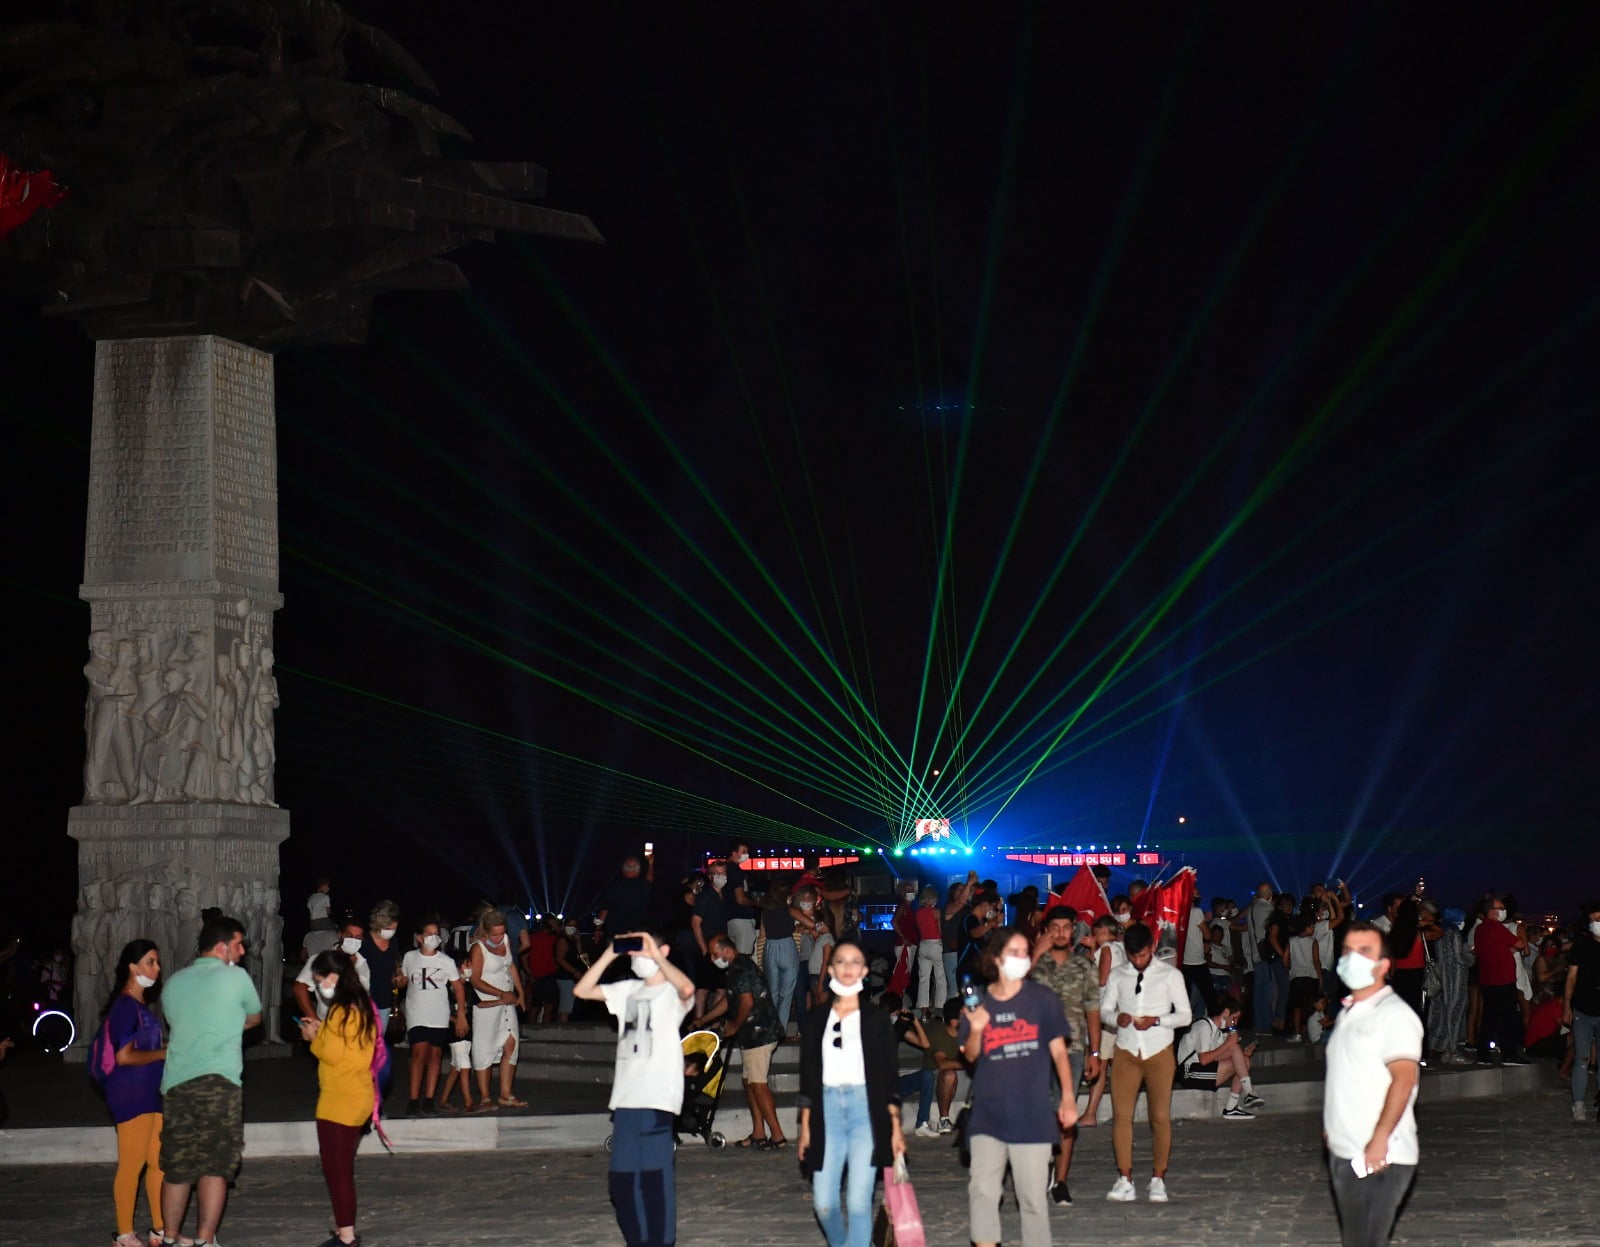 9eylül İzmir’de 9 Eylül kutlamaları Gündoğdu Meydanı’ndaki ışık ve hologram gösterisiyle sona erdi. 1922’nin bağımsızlık ruhunu kente taşıyan su ve ışık şovu izleyenlere unutulmaz dakikalar yaşattı.</p>
<p>İzmir’in işgalden kurtuluşunun 98’inci yıldönümünü birbirinden farklı etkinliklerle kutlayan İzmir Büyükşehir Belediyesi akşam da lazer ışık ve hologram gösterisiyle kentte kurtuluş coşkusu yarattı. Gündoğdu Meydanı’nda Körfez vapurundan yapılan lazer ışık gösterisine marşlar eşlik ederken, 9 Eylül’e özel hazırlanan hologram gösterisi izleyenlere duygu dolu anlar yaşattı. Hologram teknolojisiyle eş zamanlı olarak Gündoğdu Meydanı, Karşıyaka ve Karantina’da yapılan gösteride 26 Ağustos Büyük Taarruz, 30 Ağustos Başkomutan Meydan Muharebesi ve Atatürk’e ait görüntüler İzmirlilerin ortak hafızasını yeniden canlandırdı.